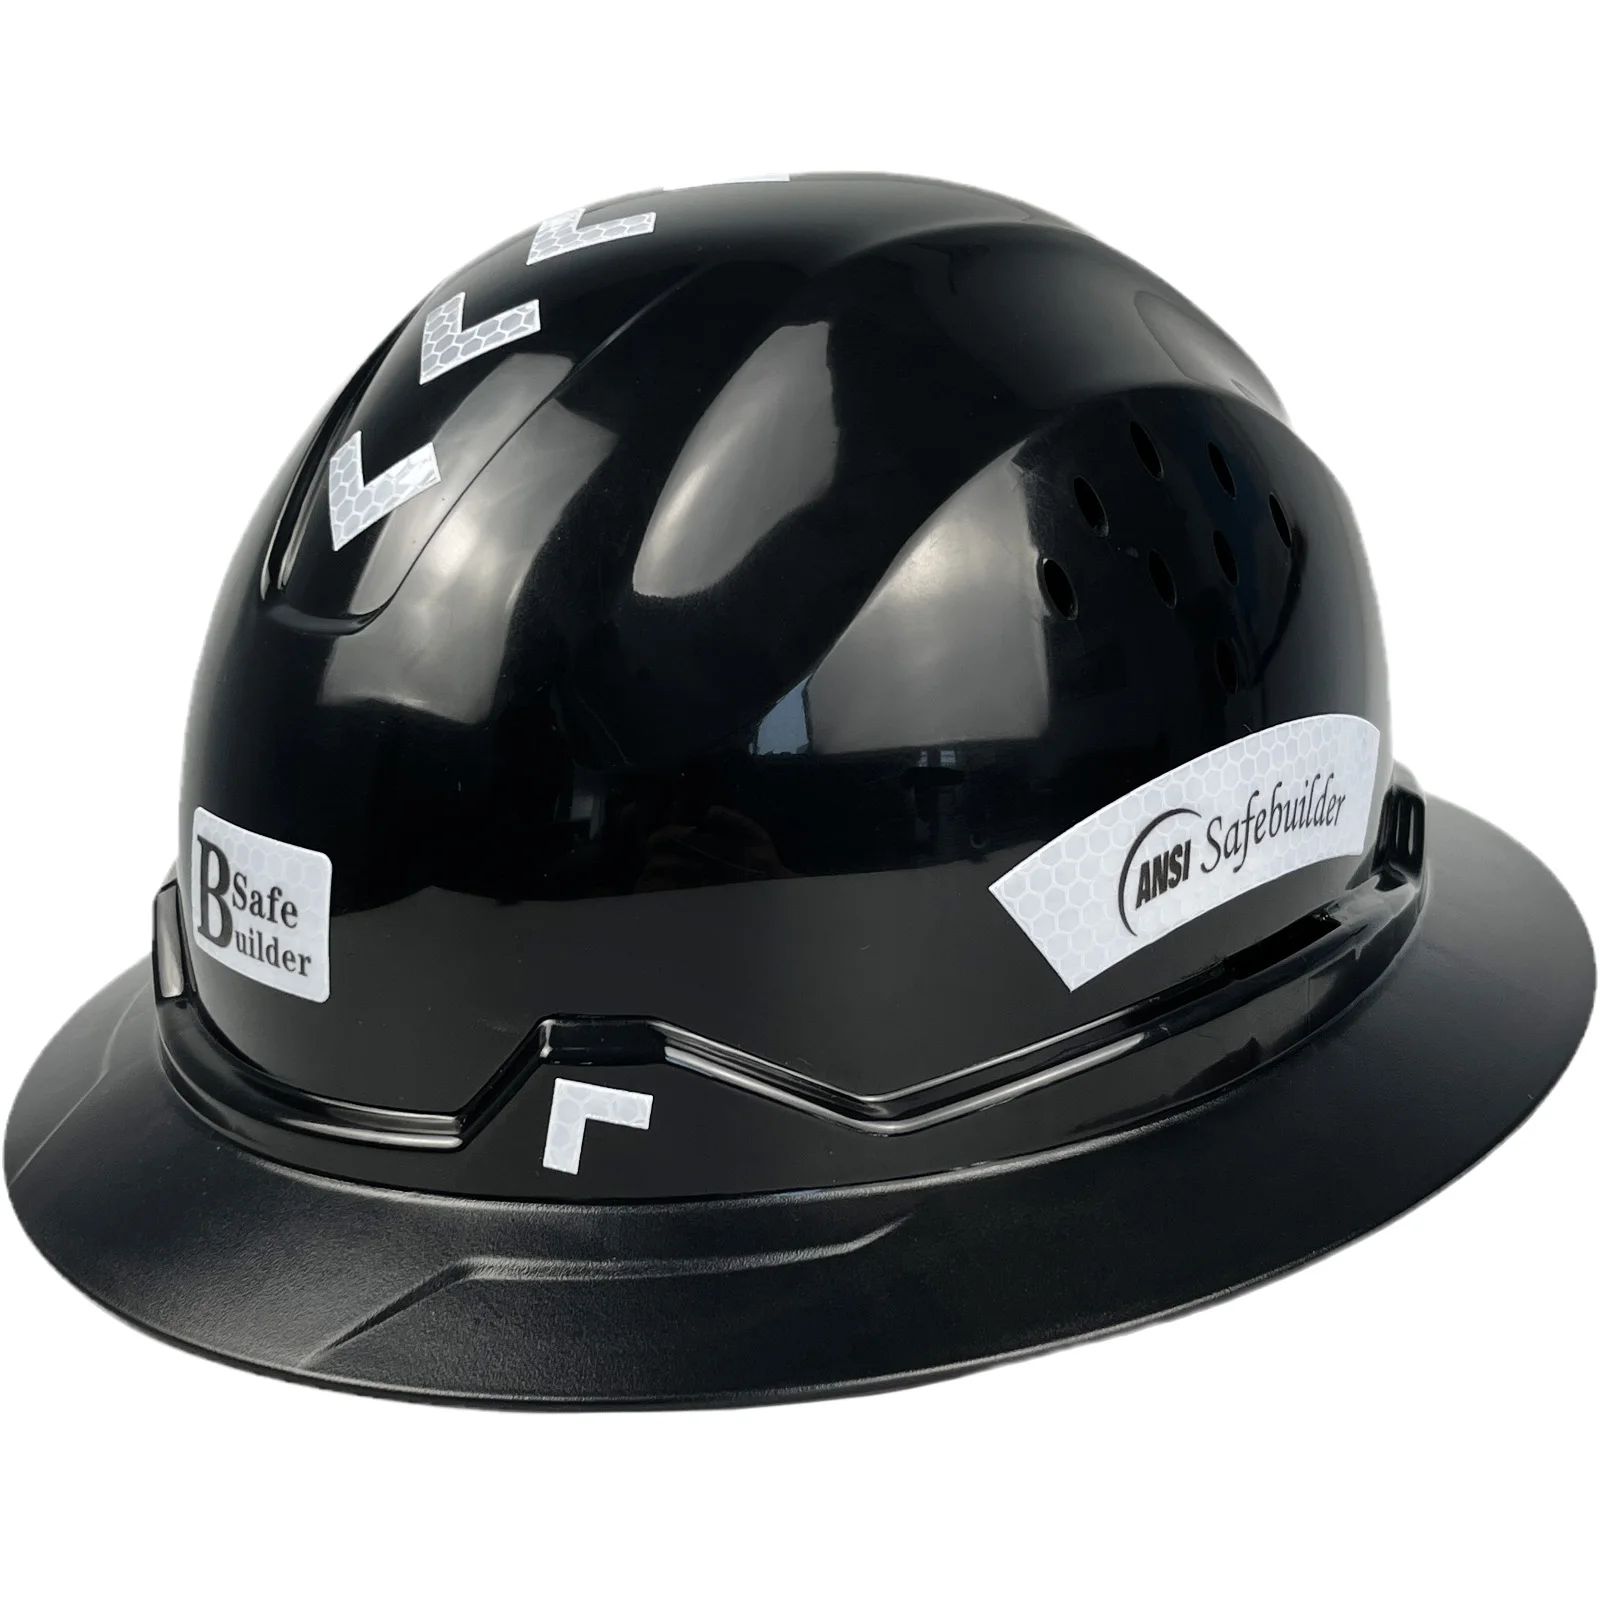 Новая Полноразмерная Каска Birm Для Инженера ABS Защитный Шлем Солнцезащитный Козырек Светоотражающие Рабочие Колпаки ANSI Z89.1 С вентиляцией Промышленные и Строительные